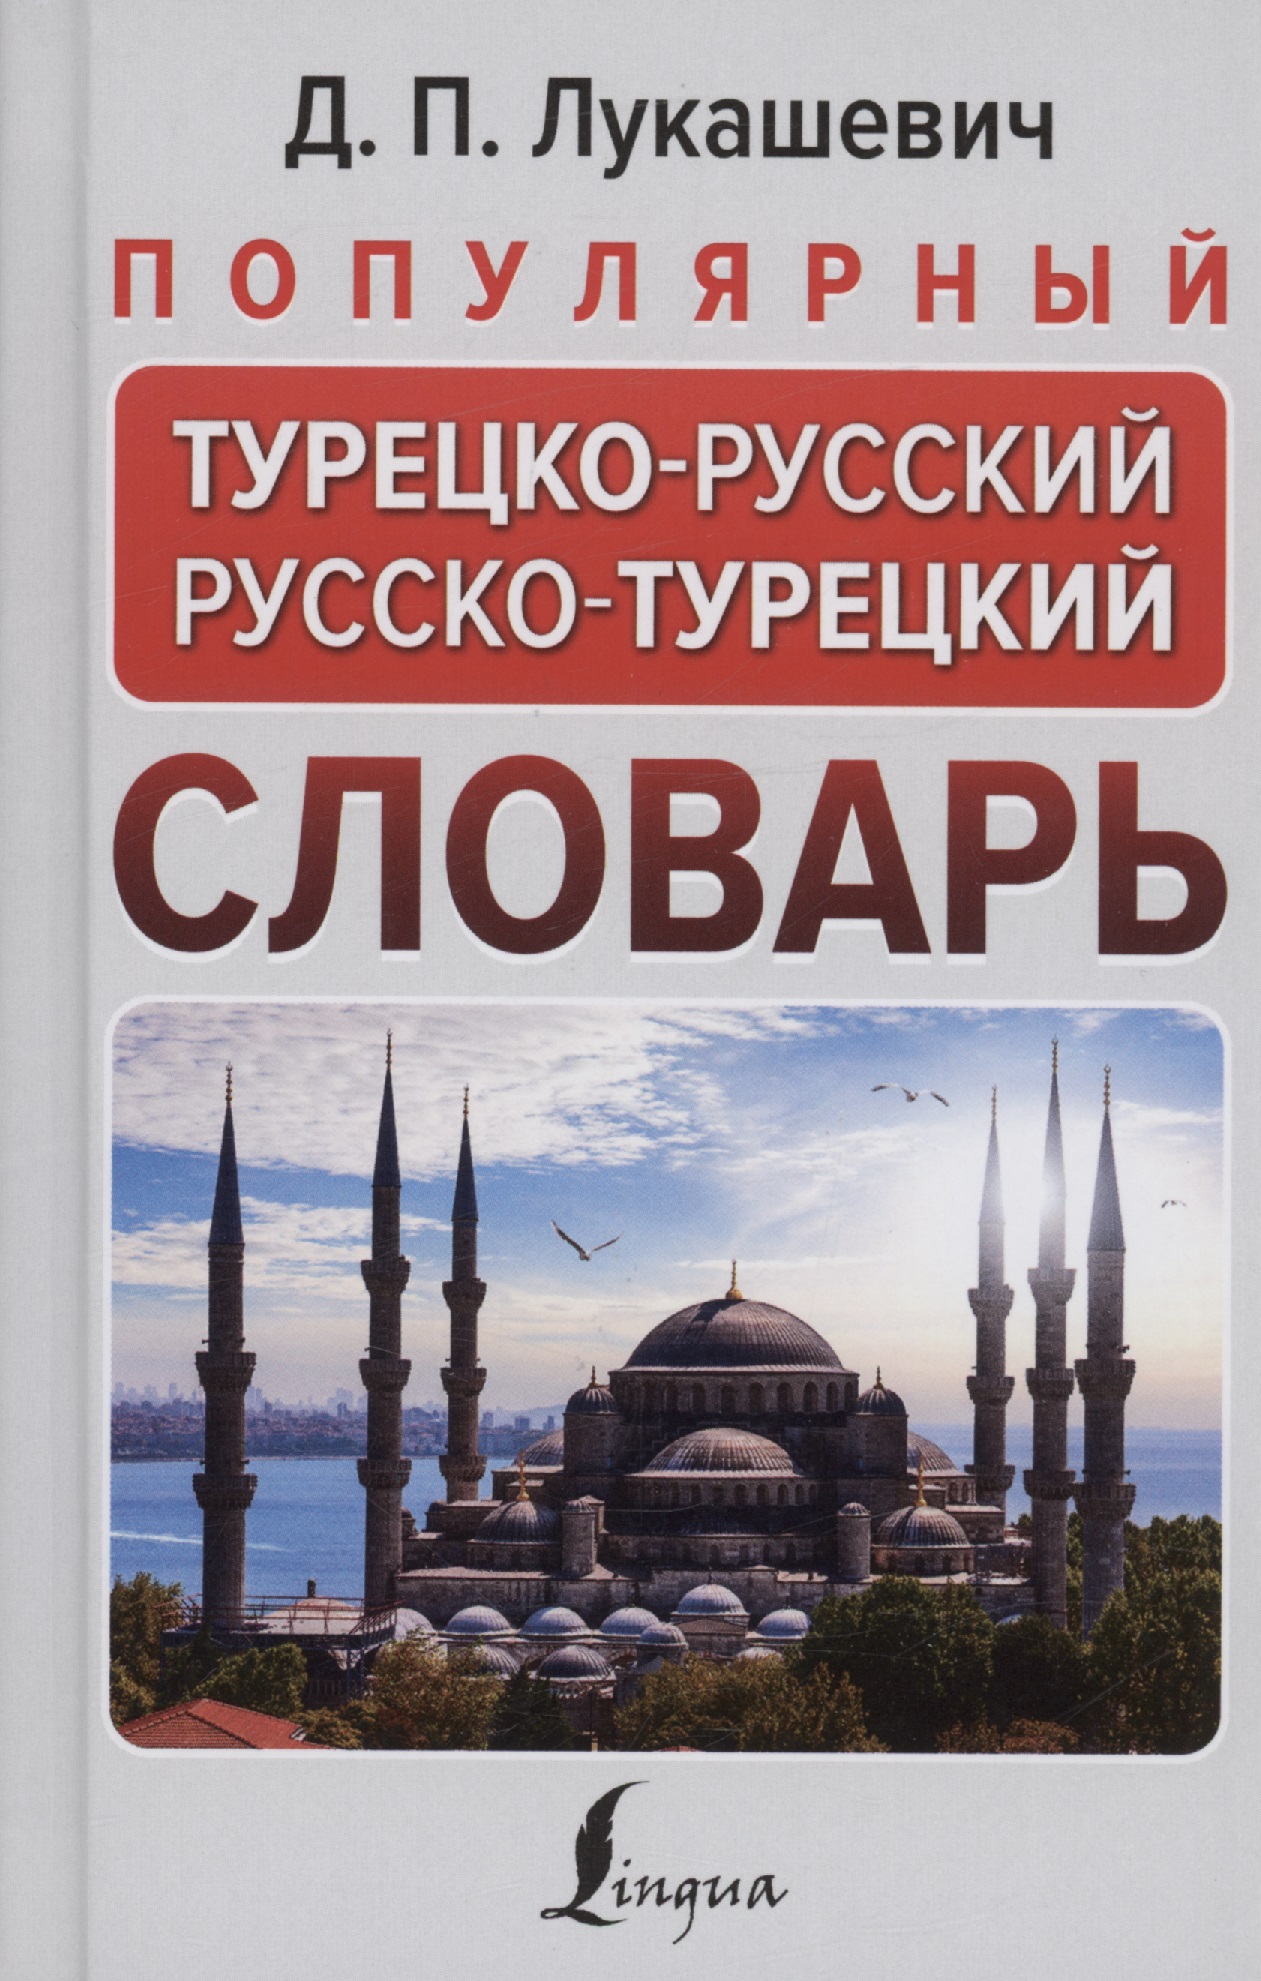 Лукашевич Д. П. Популярный турецко-русский русско-турецкий словарь